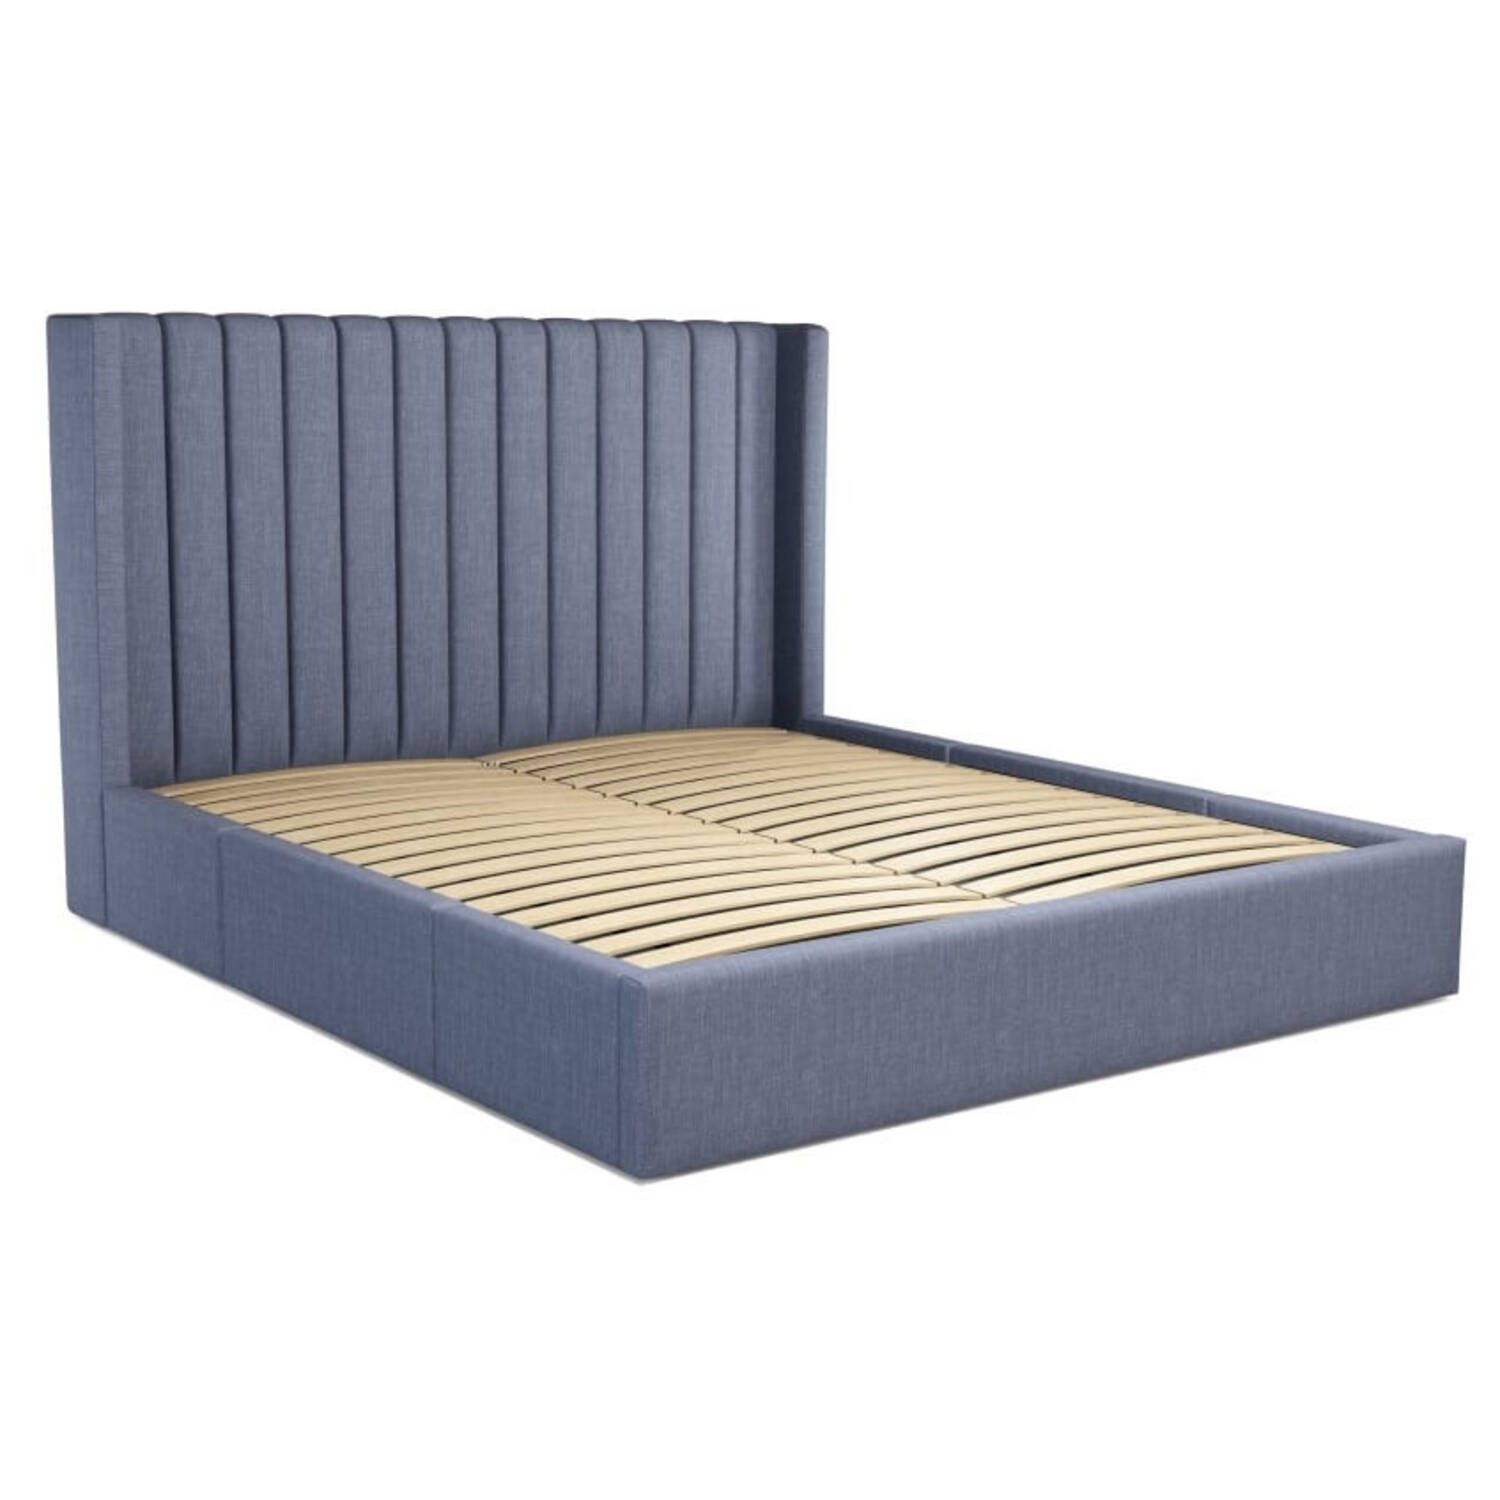 Кровать Cory с выдвижными ящиками для хранения, синяя